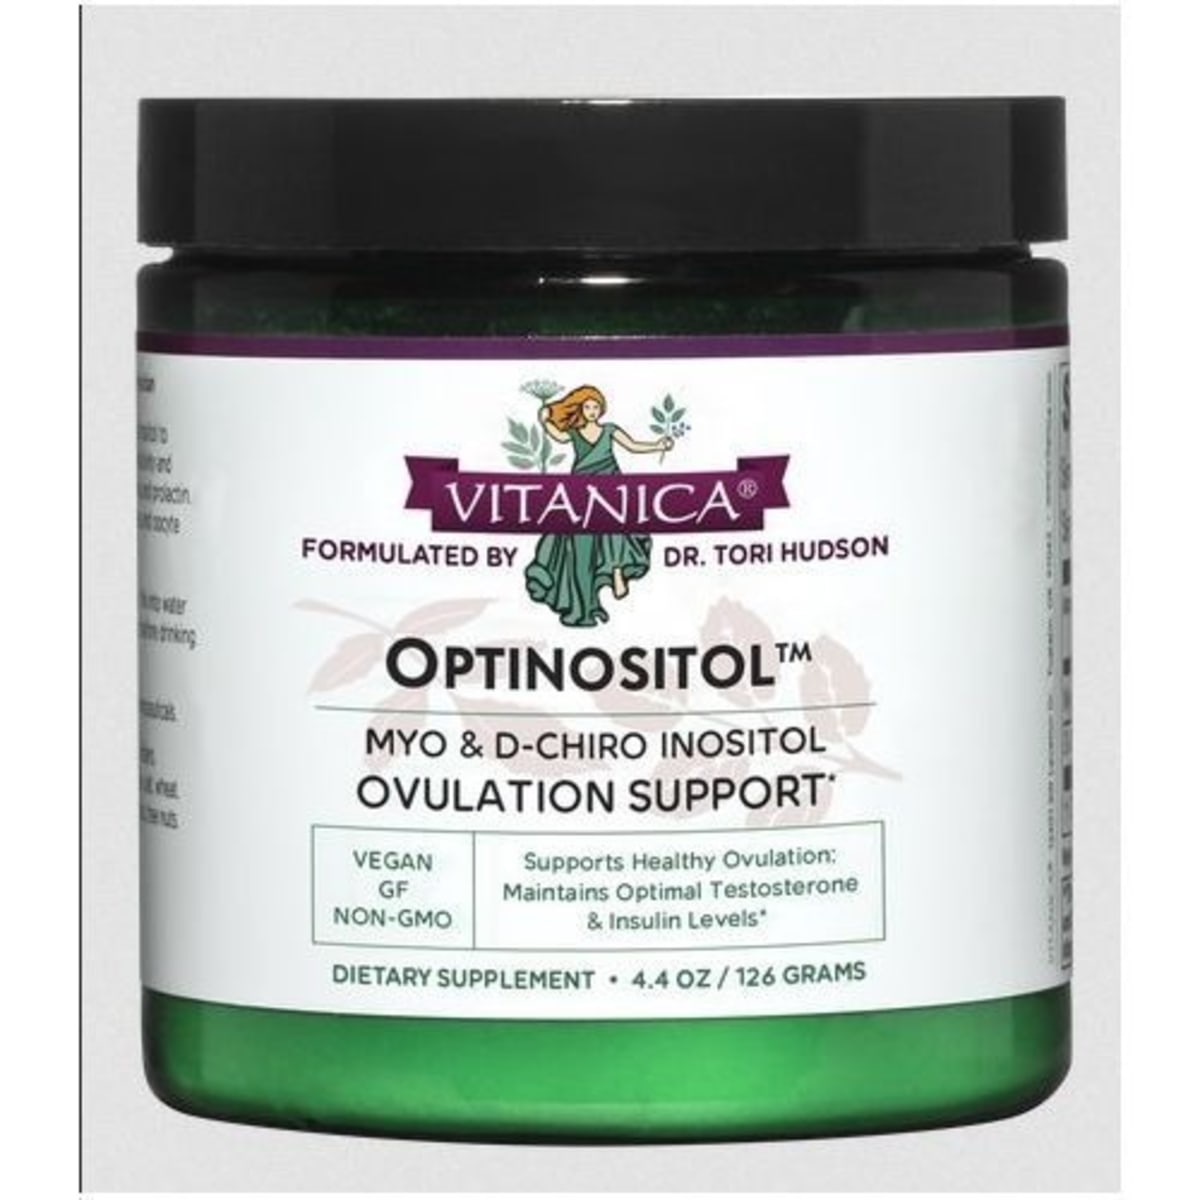 Premium Inositol Supplement - Myo-Inositol and D-Chiro Inositol